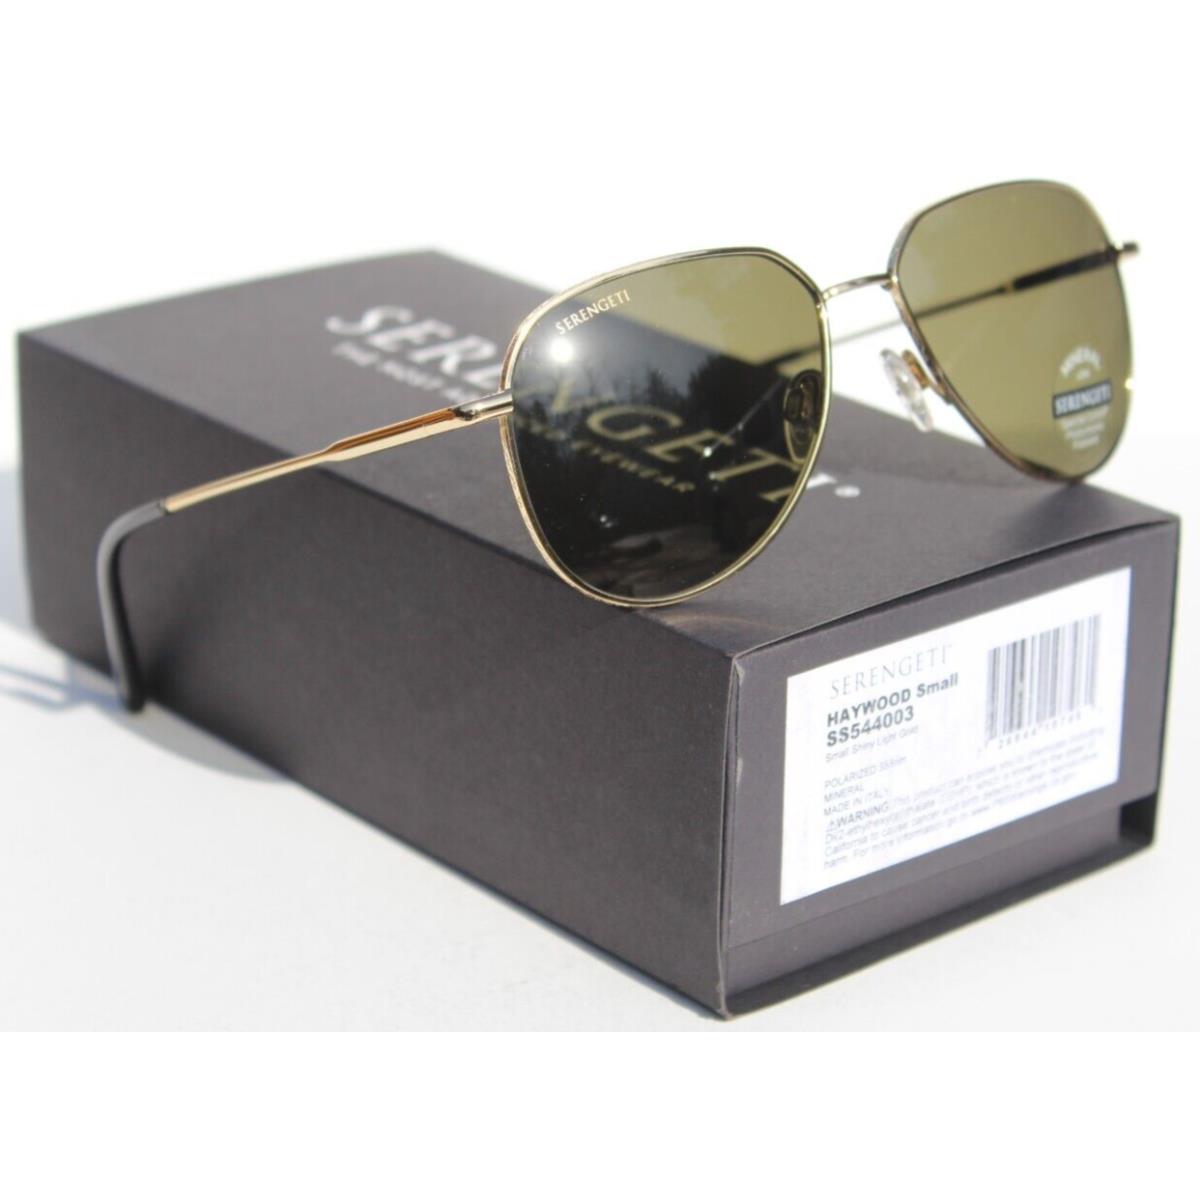 Serengeti Haywood Small Polarized Sunglasses Light Gold/555nm SS544003 Italy